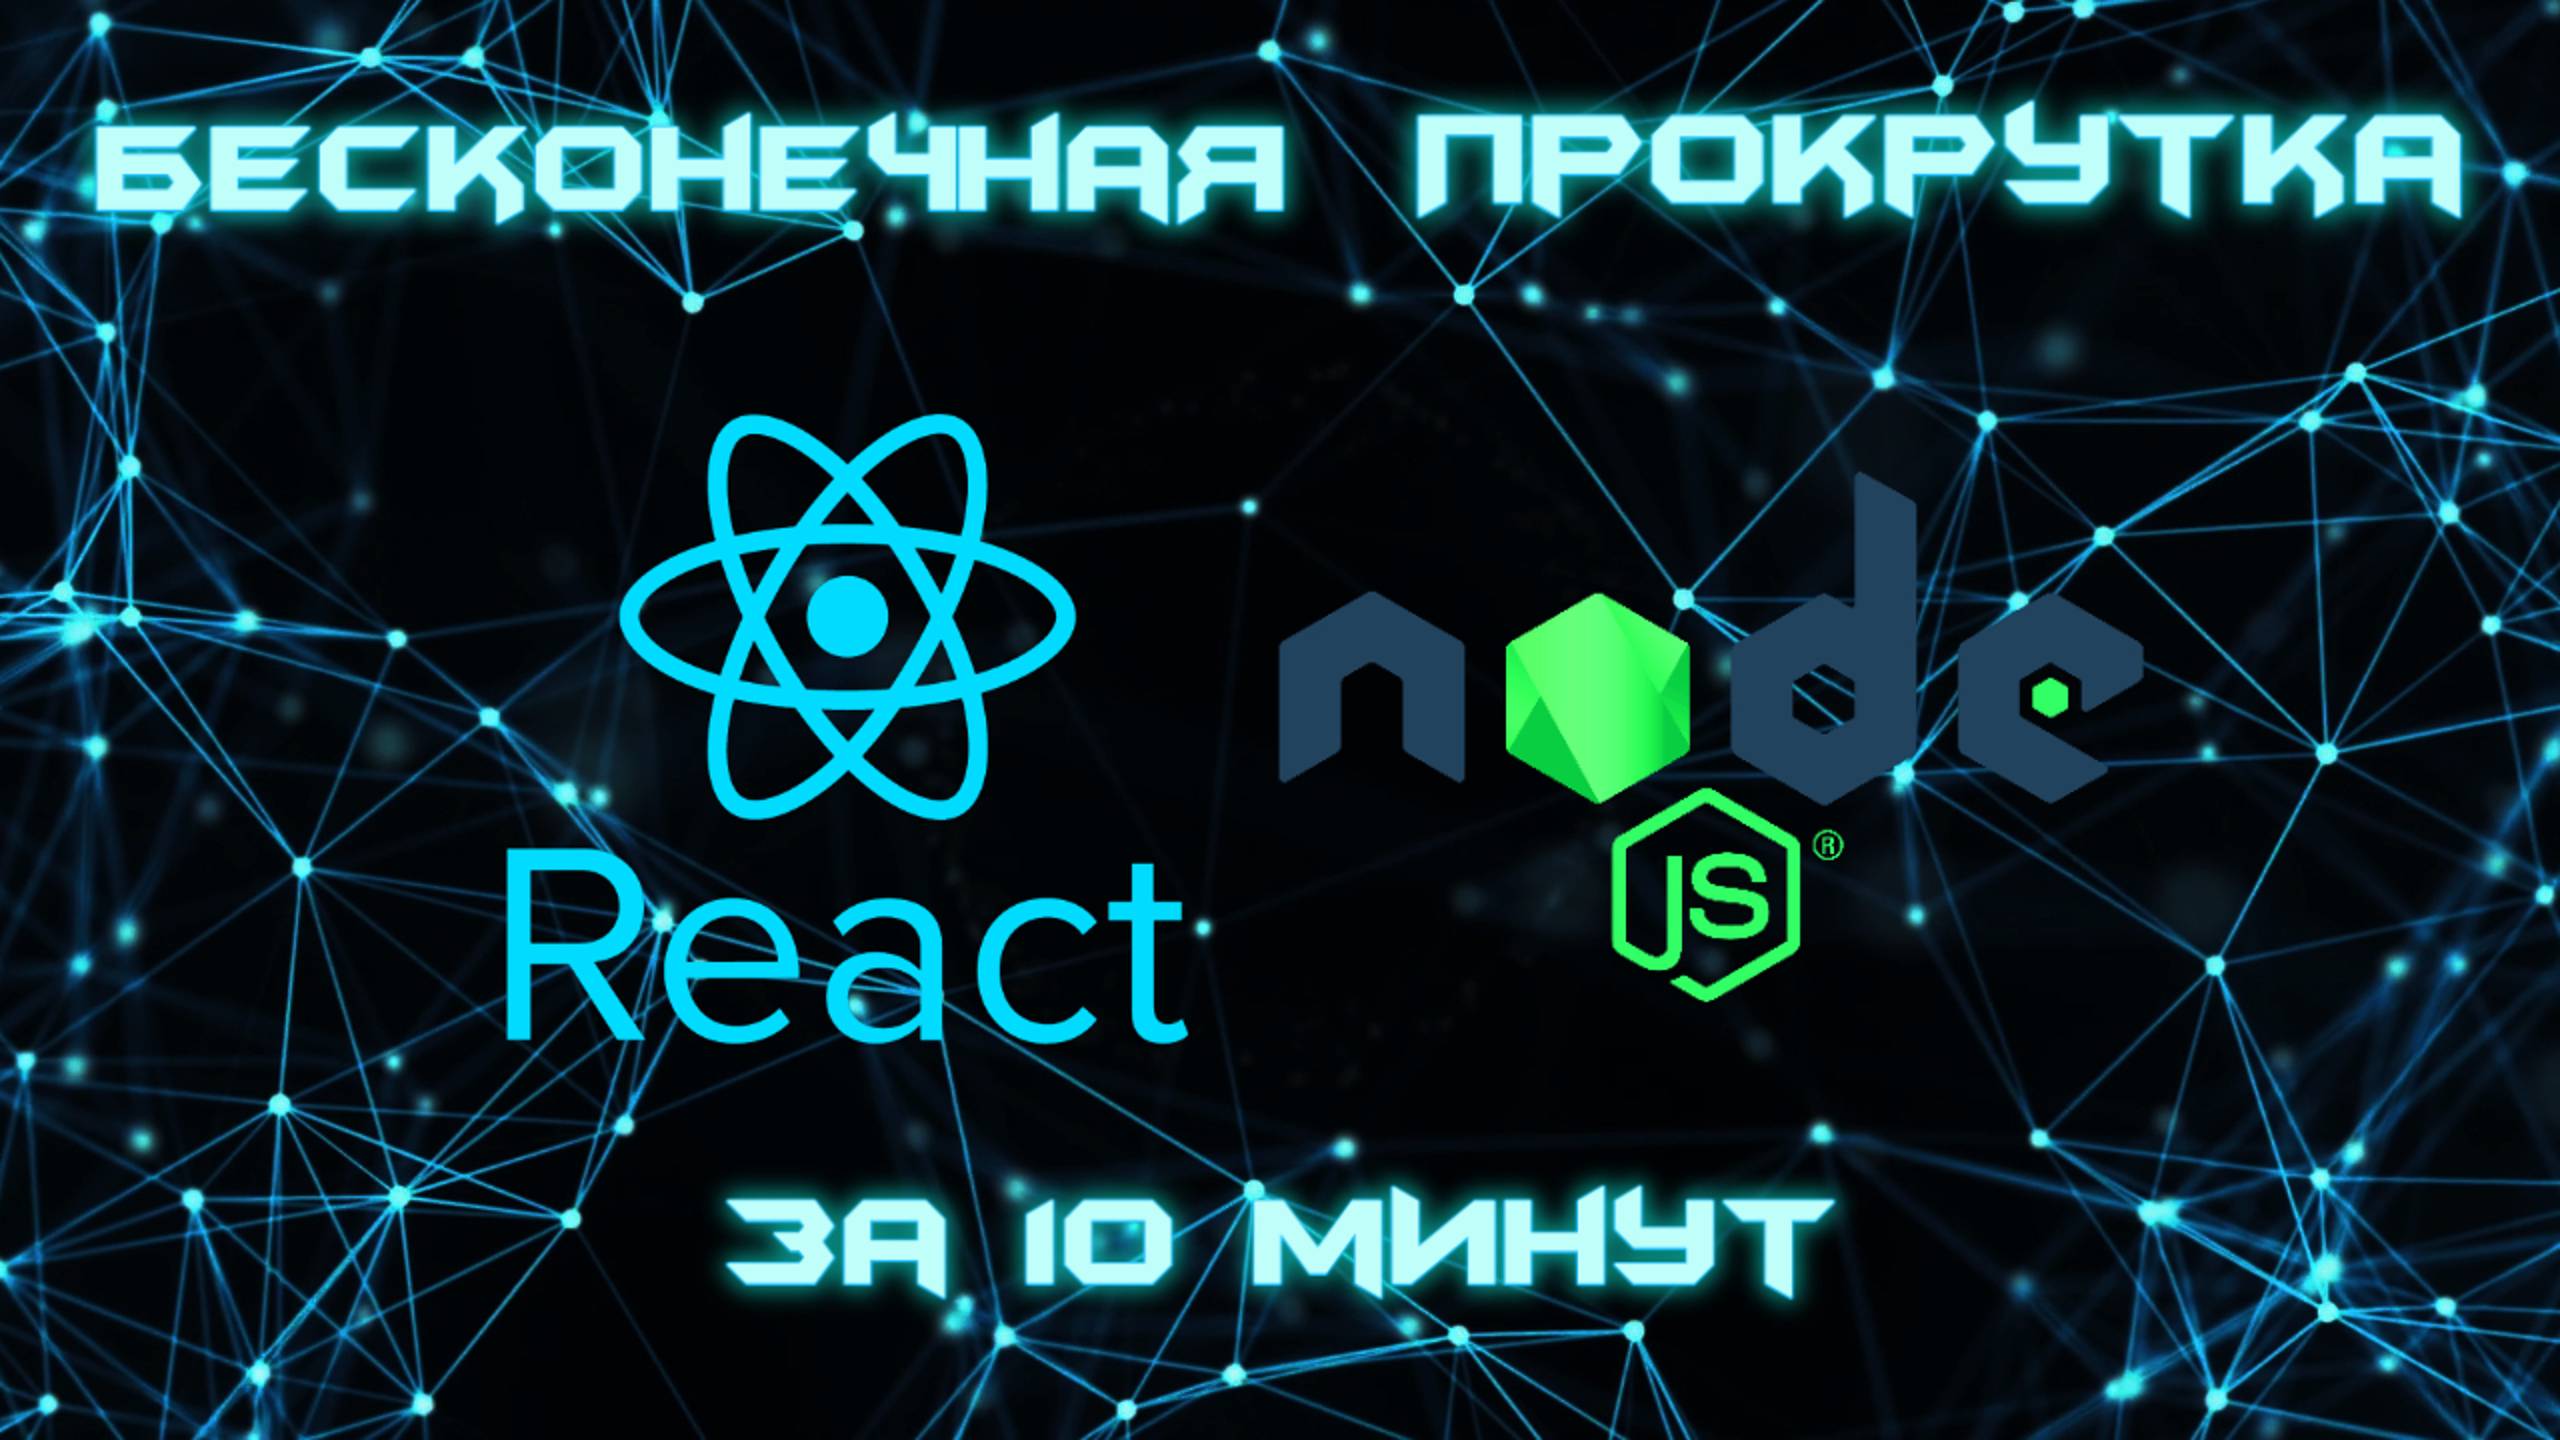 Бесконечная Прокрутка Контента на React & Node.js!